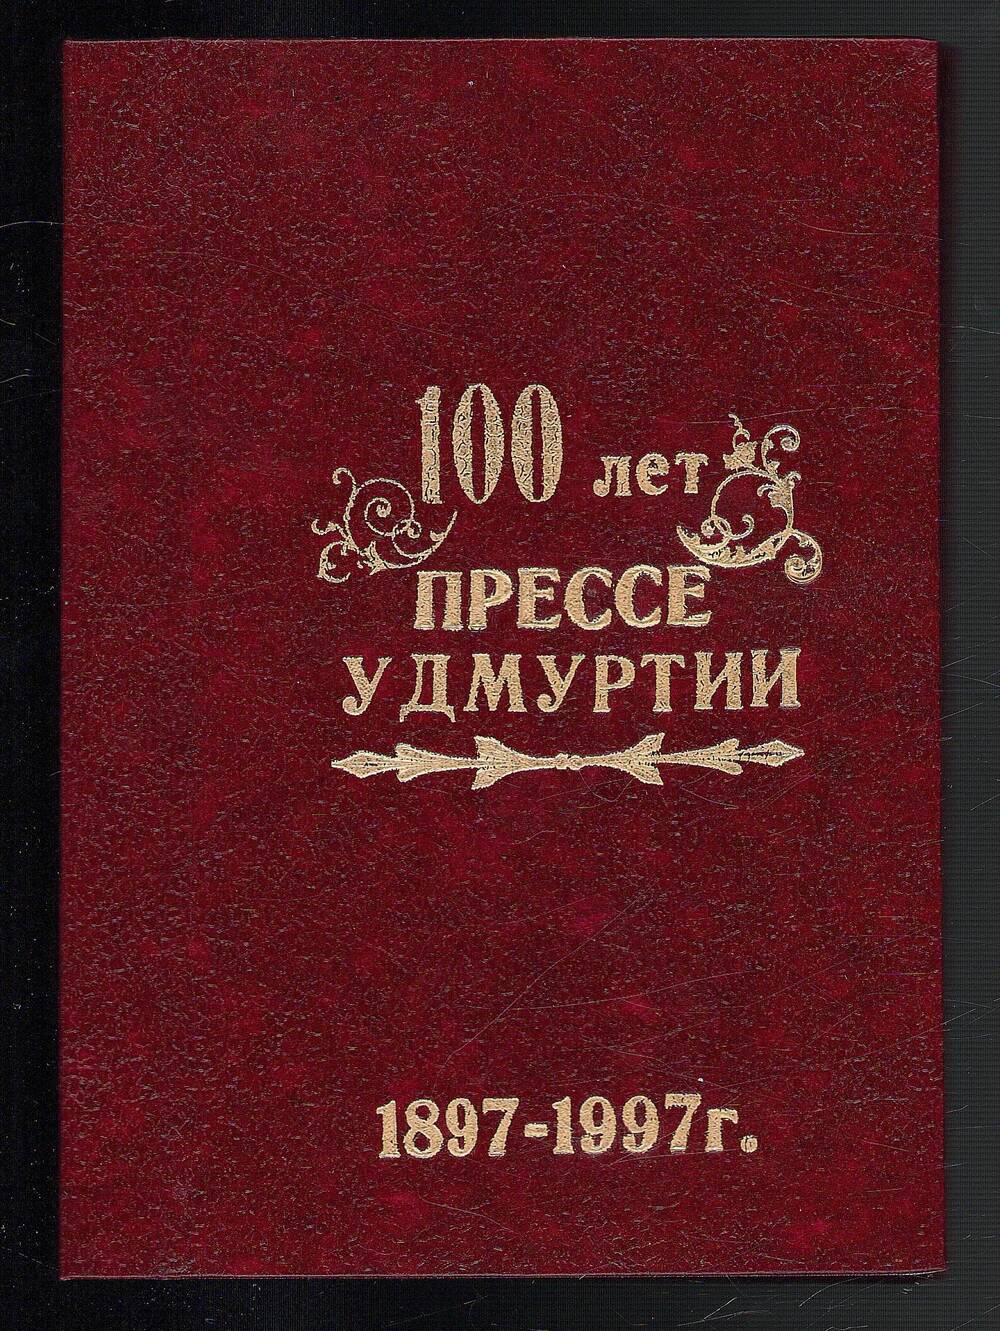 Блокнот с эмблемой фестиваля «100 лет прессе Удмуртии», г. Сарапул, 1997 г.